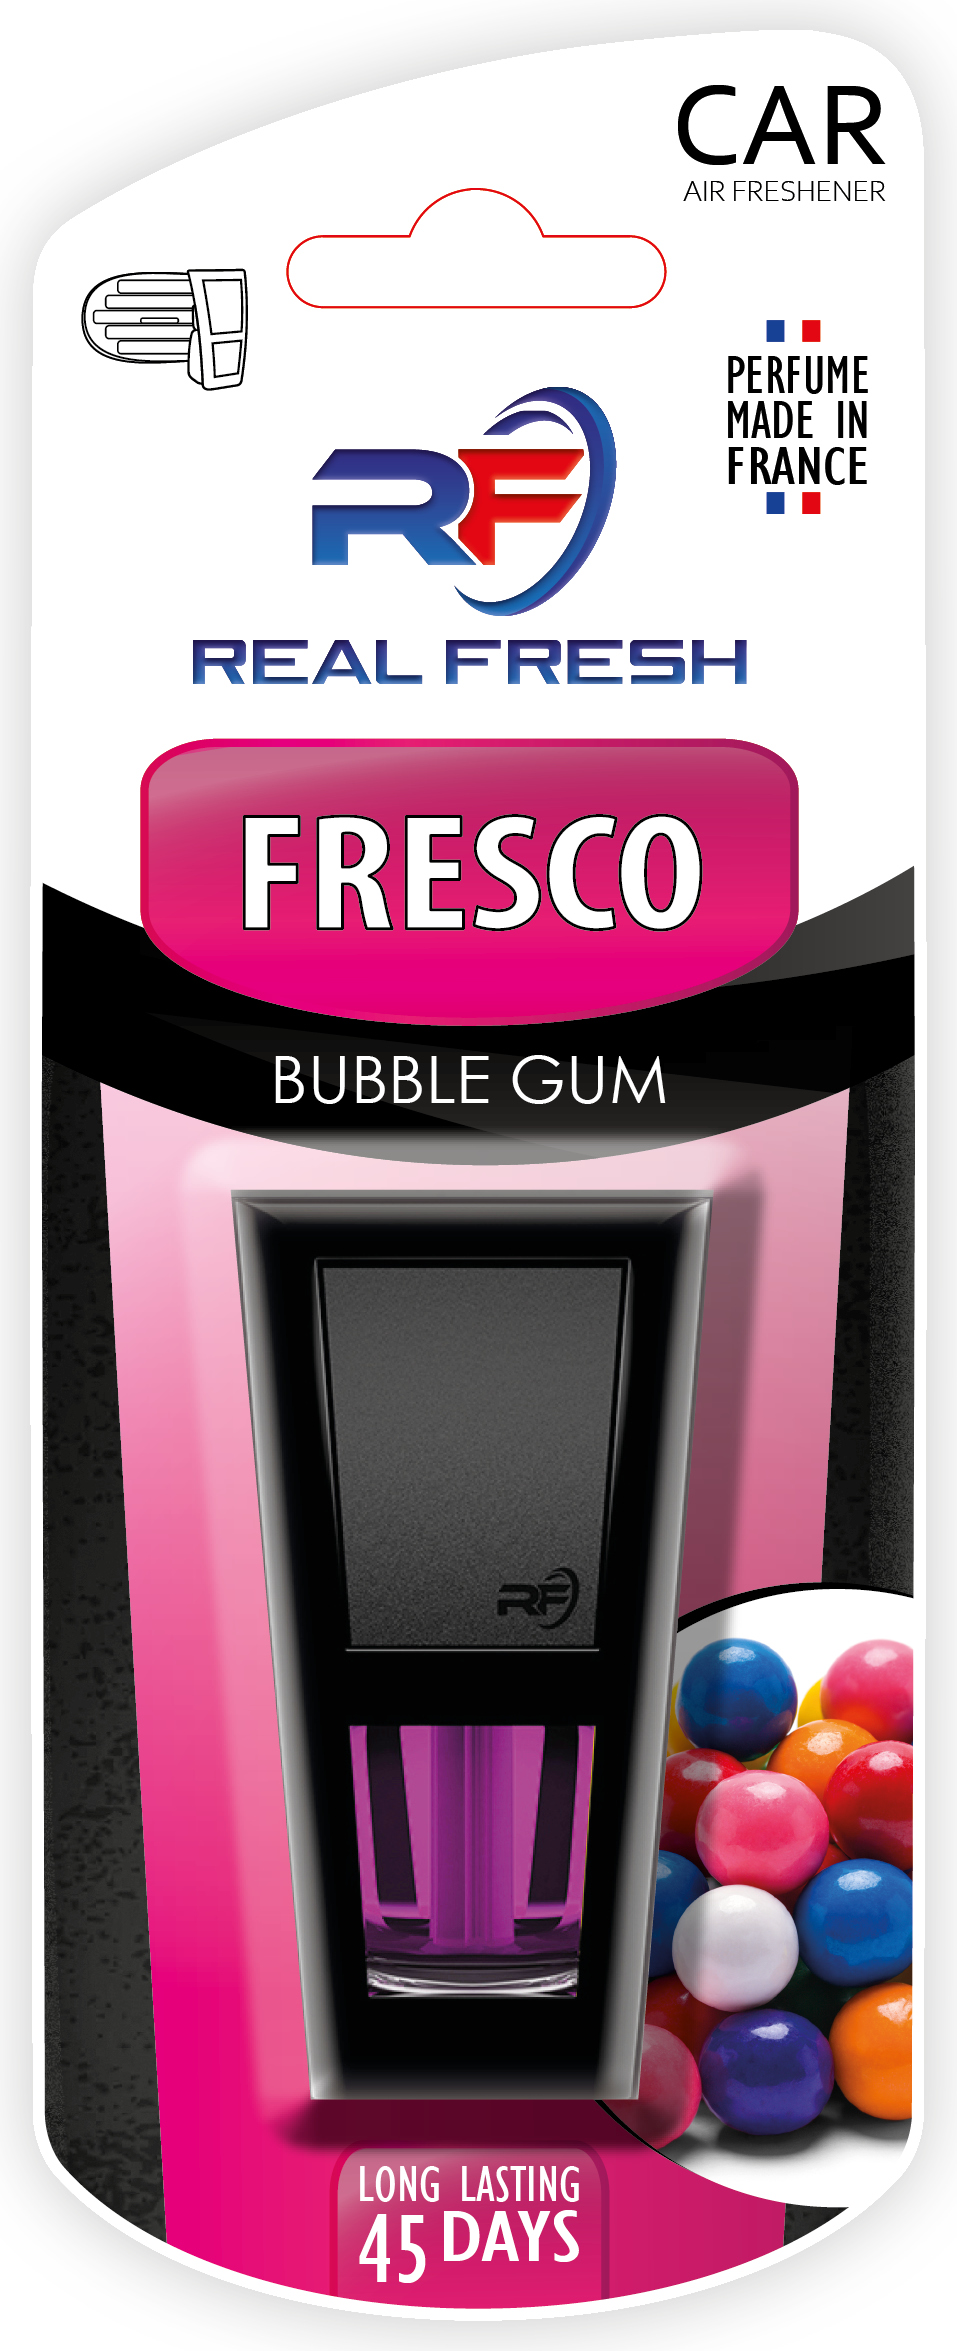 Fresco Bubble Gum Image